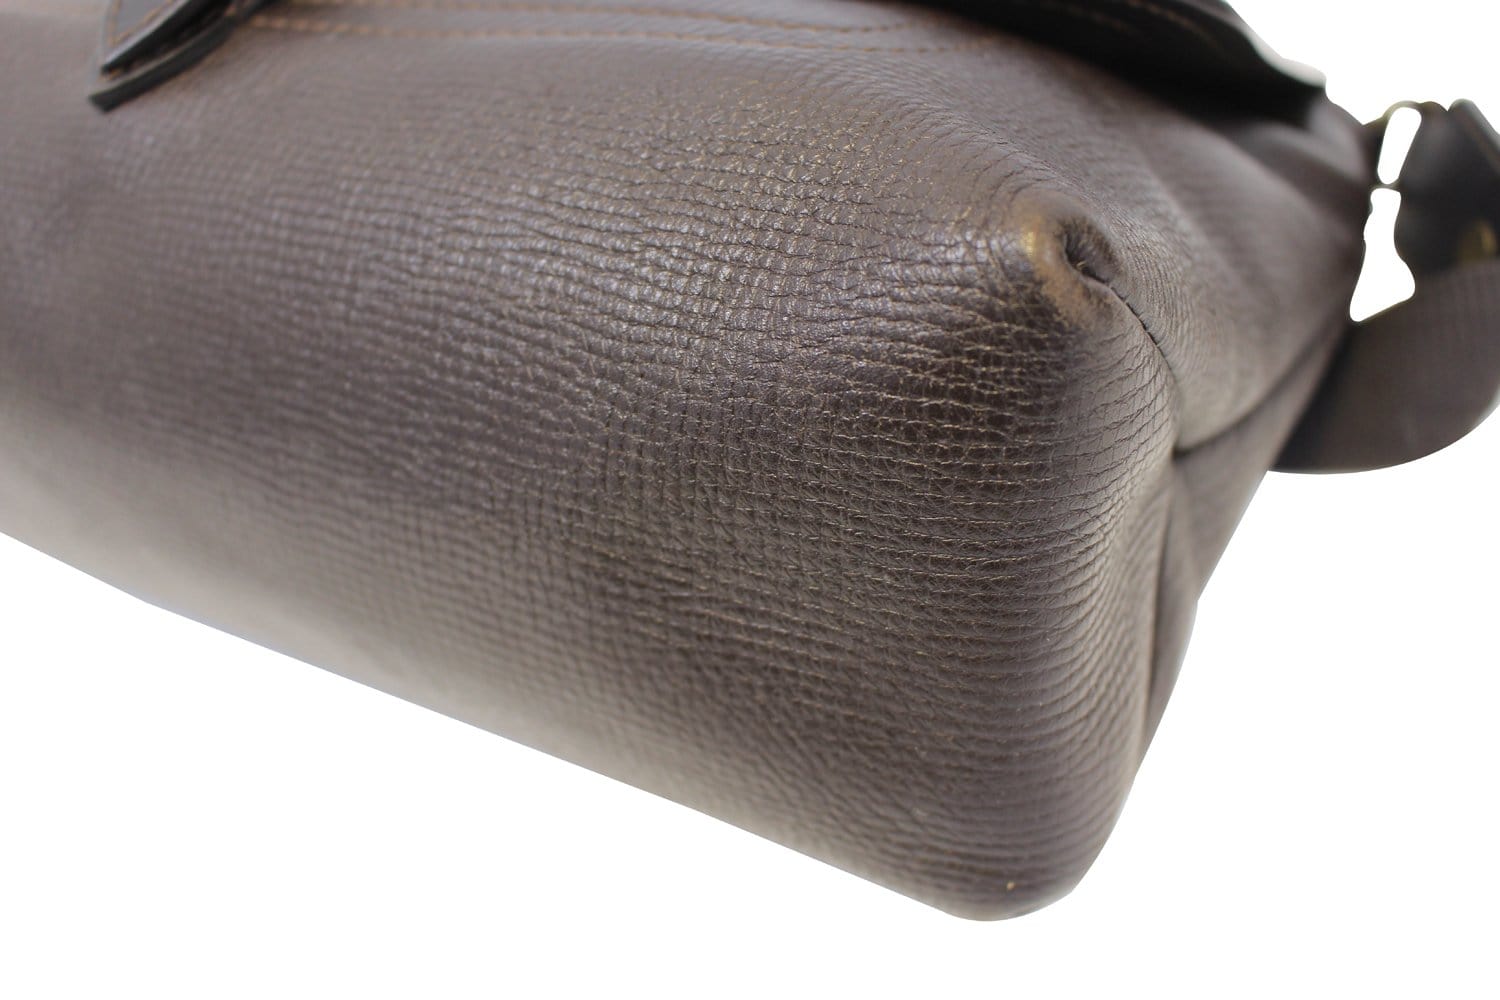 Louis Vuitton Messenger Shoulder bag 402478